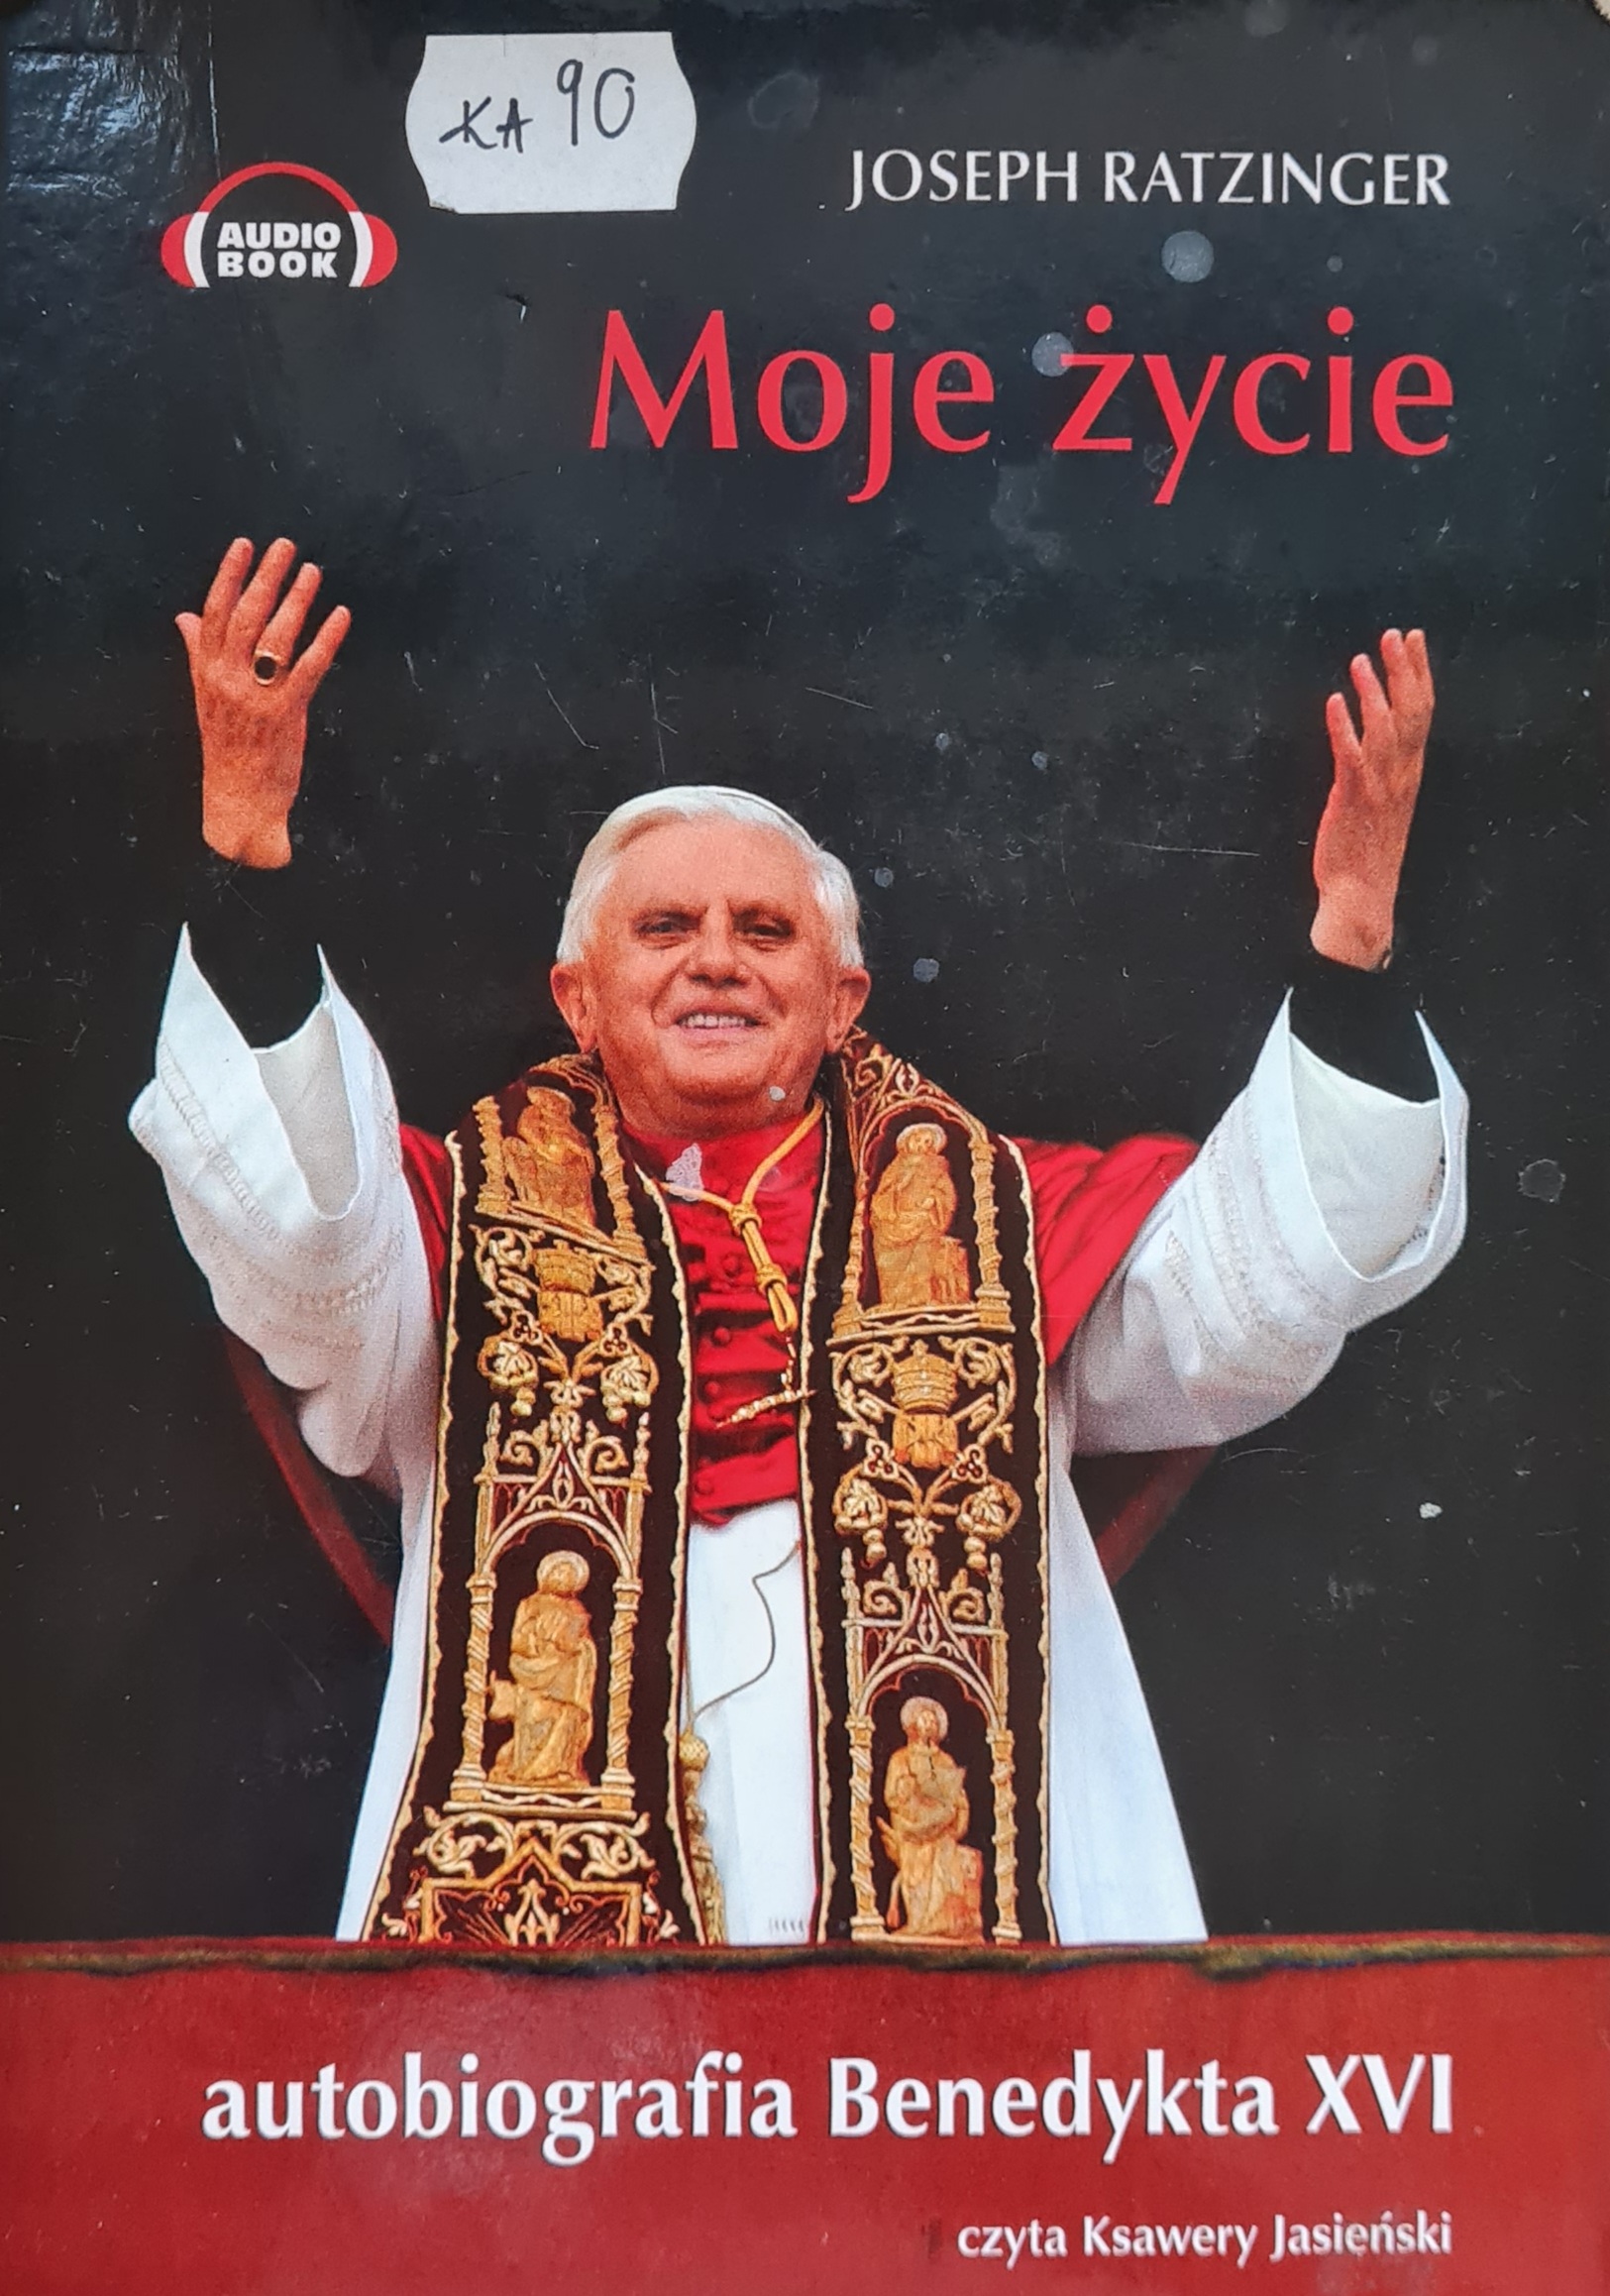 Ratzinger Joseph - Moje życie